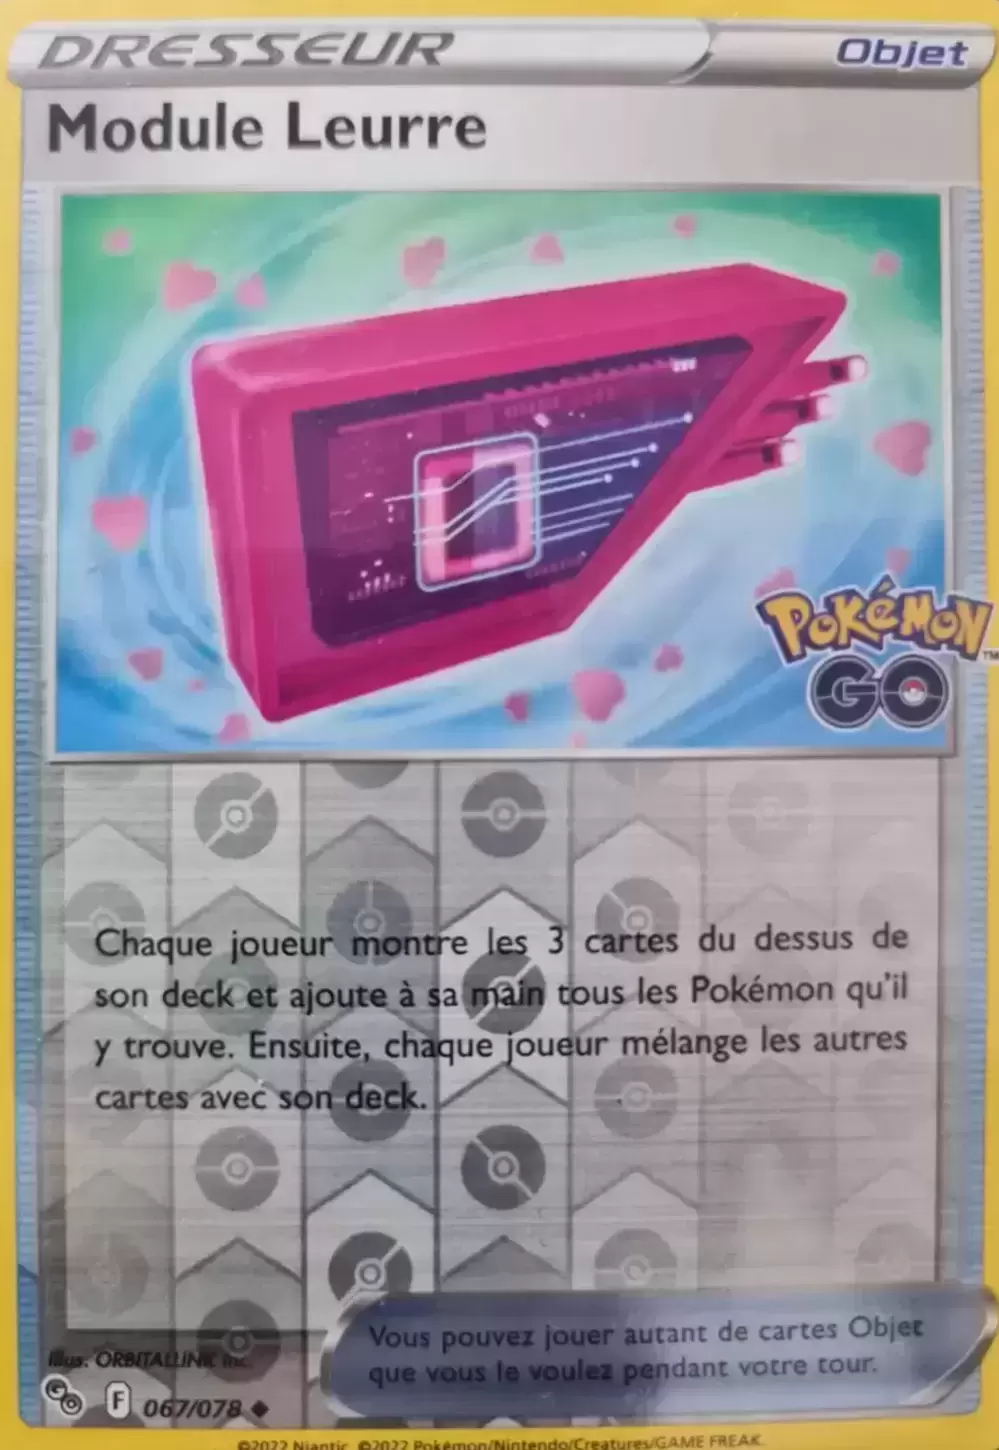 Module Leurre Reverse - carte Pokémon 067/078 Pokémon Go